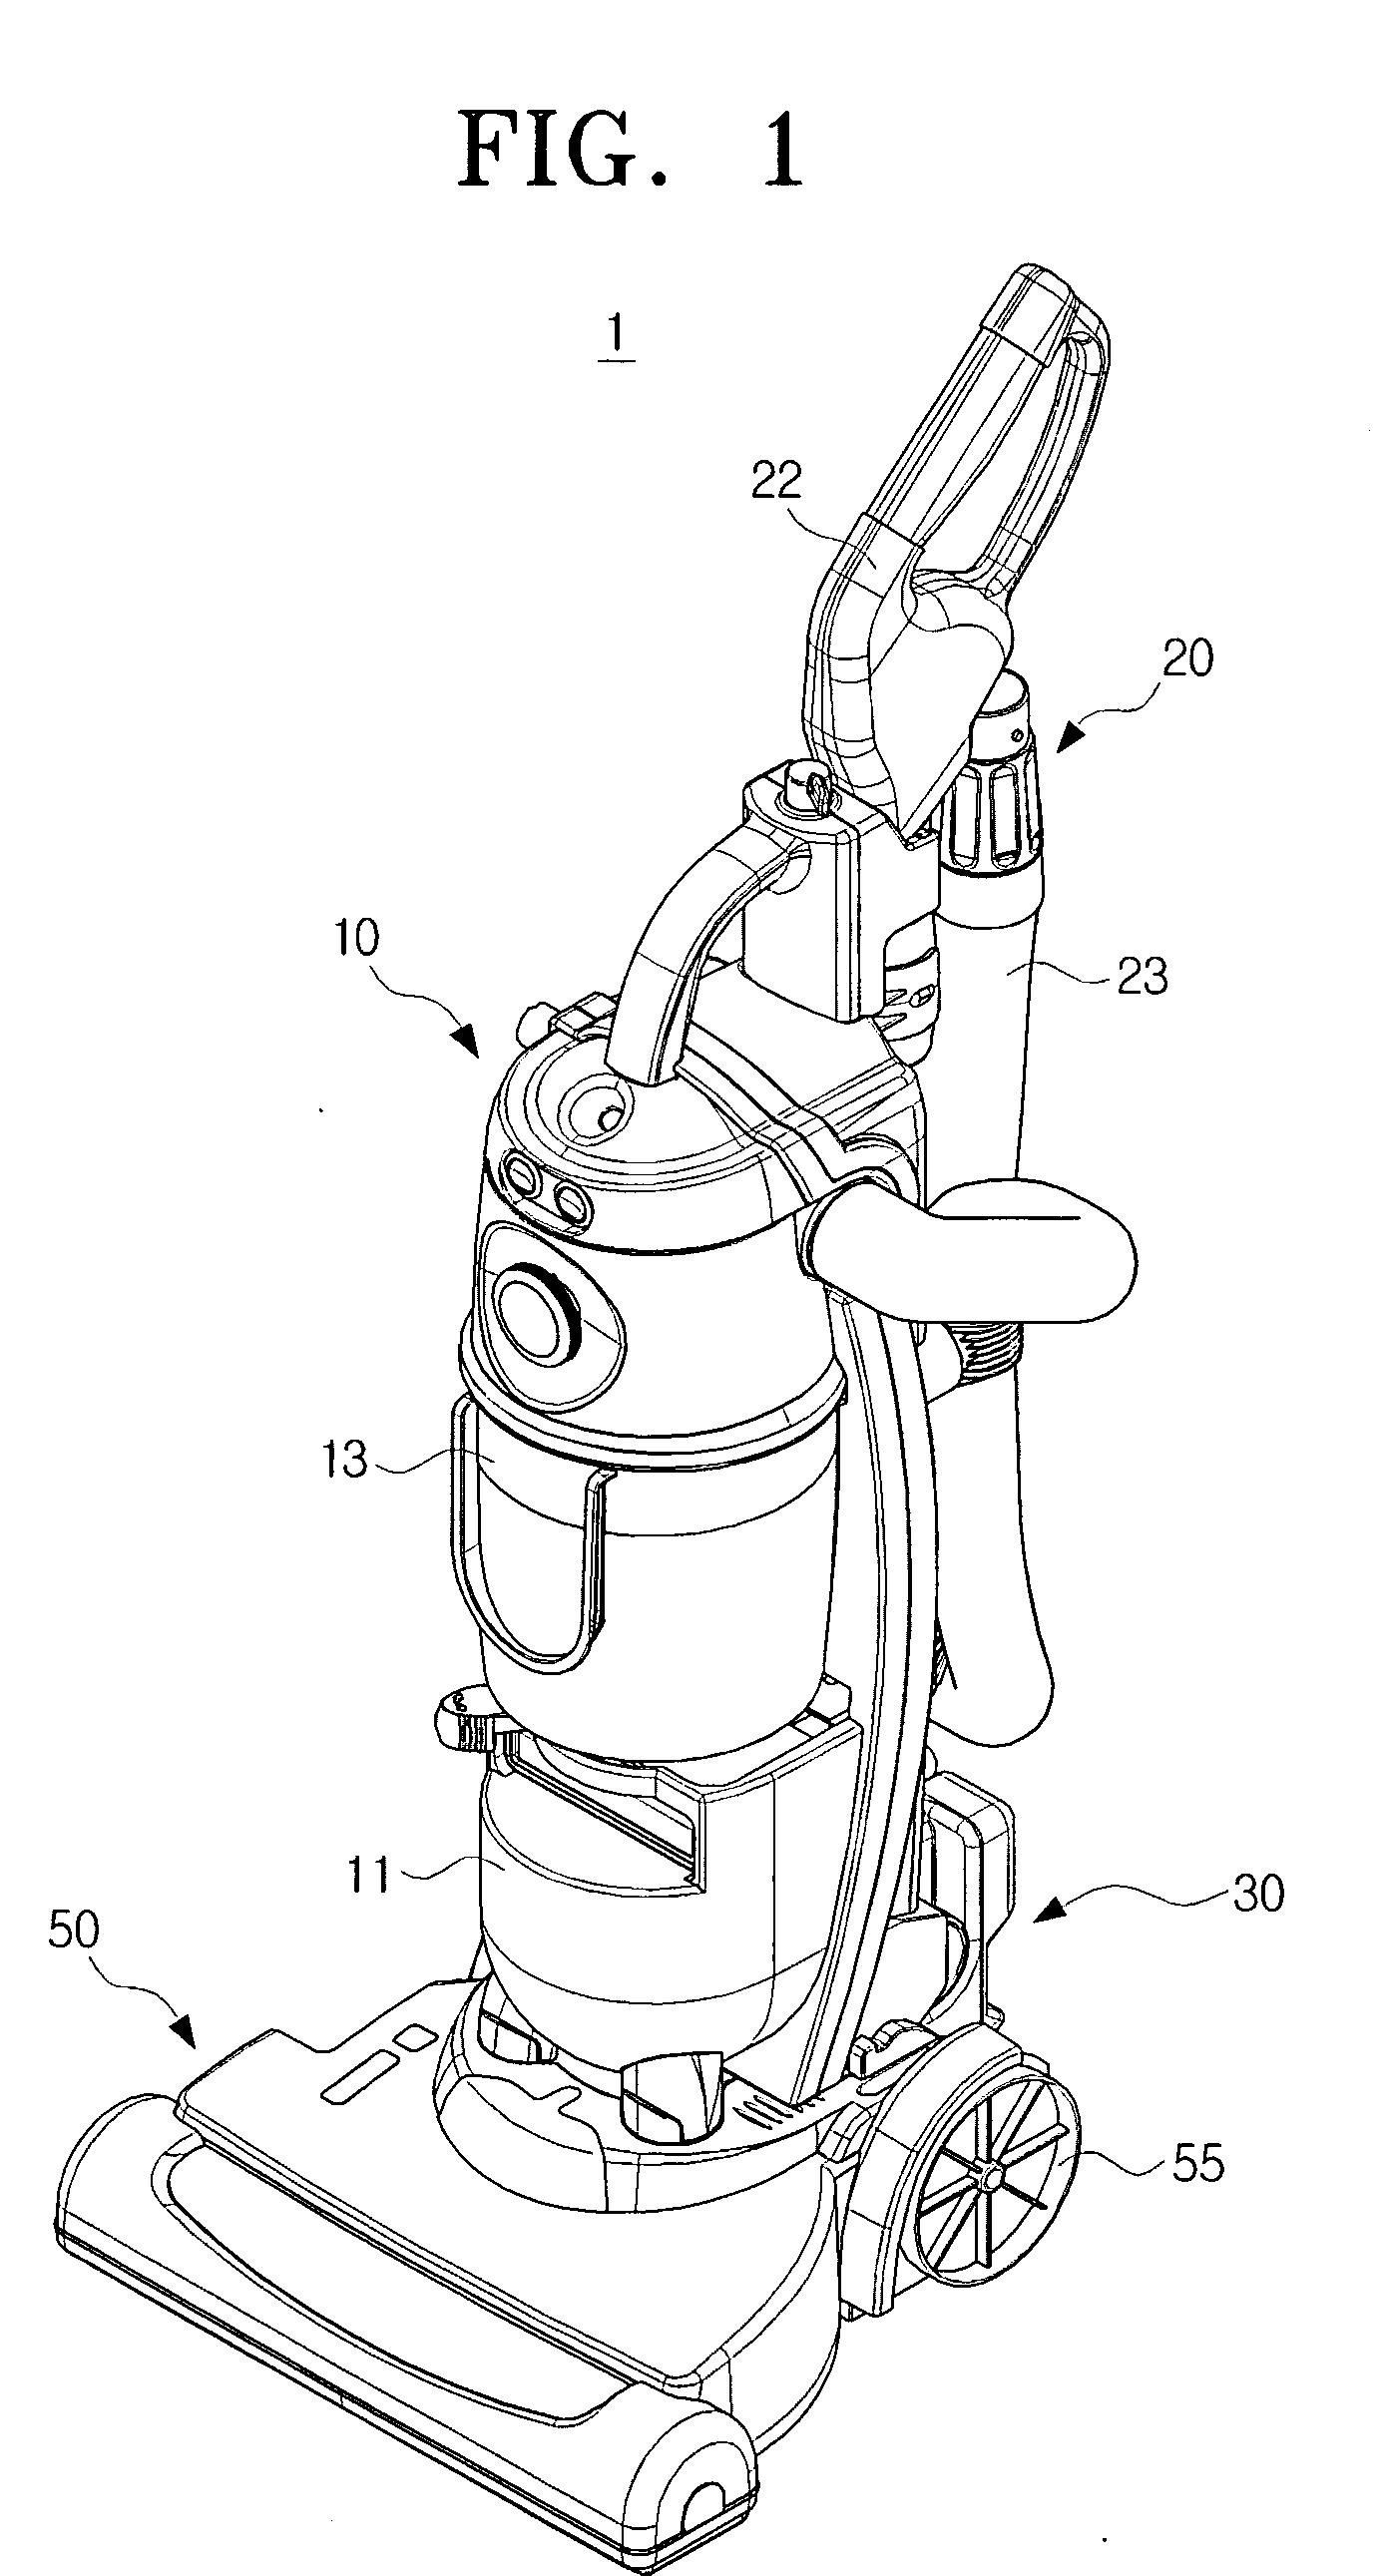 Upright type vacuum cleaner